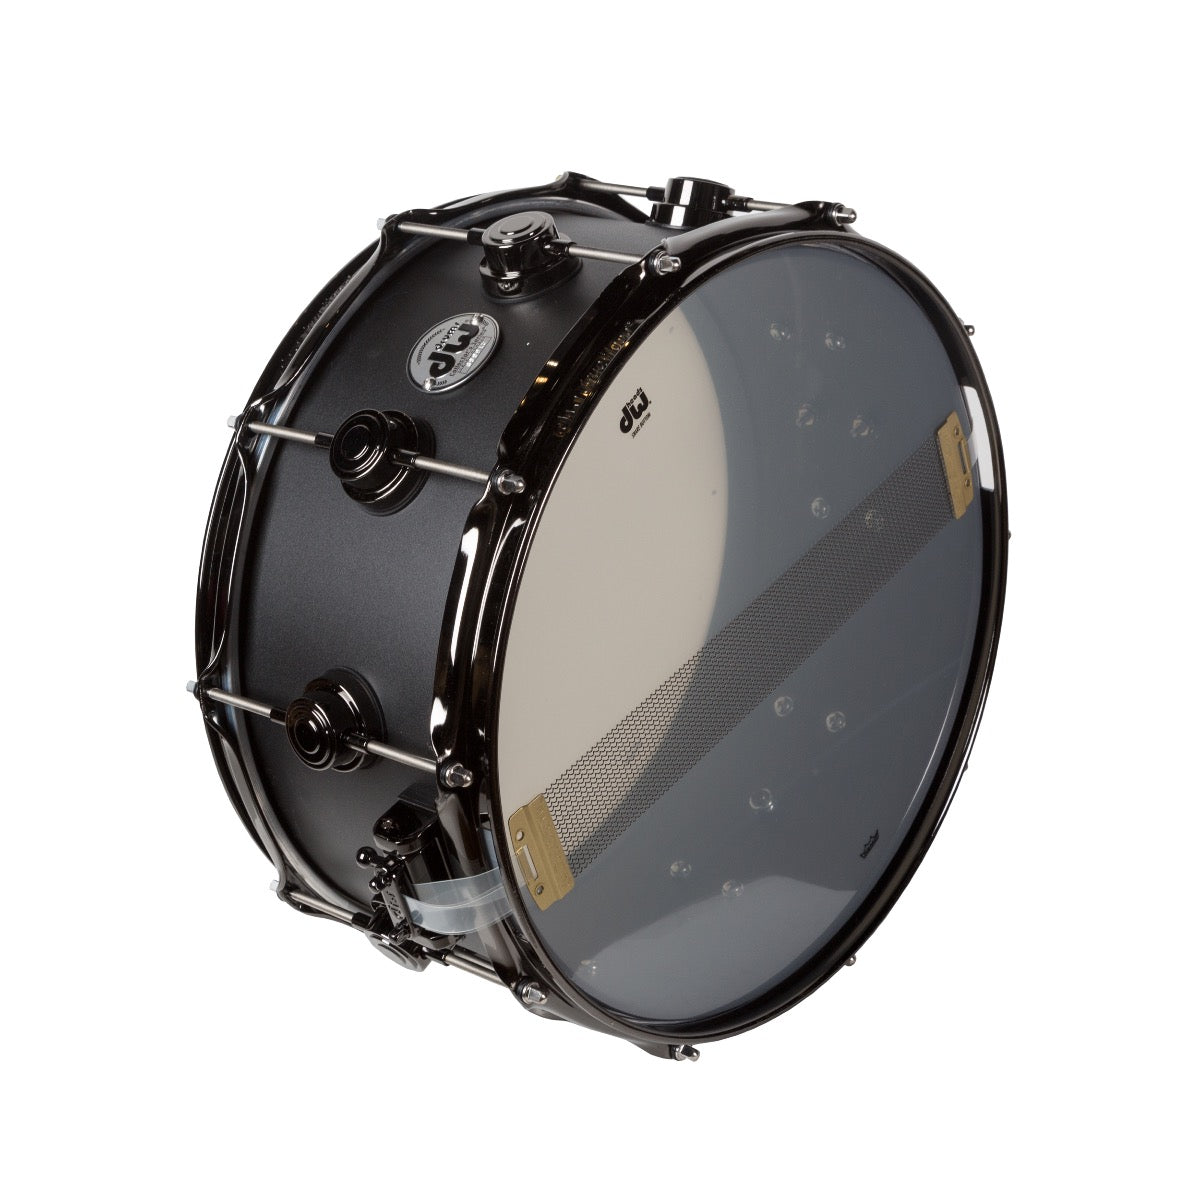 Drum Workshop 3mm Aluminum 6.5”x14” Black Powder Coated Snare Drum